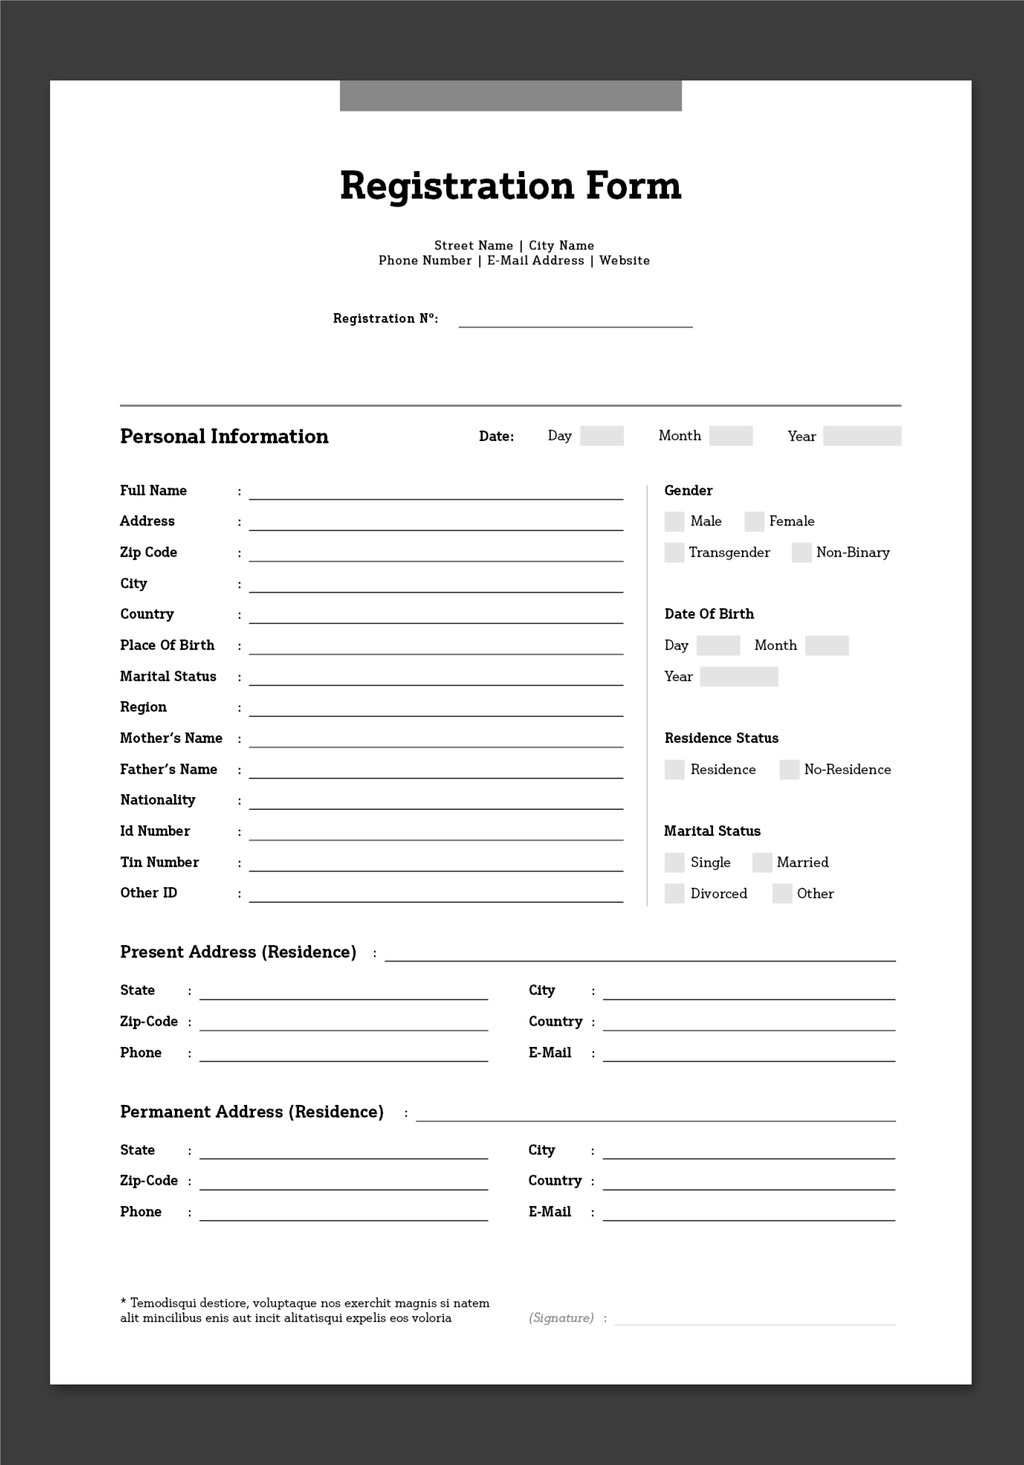 registration-form-layout-white-black-indd